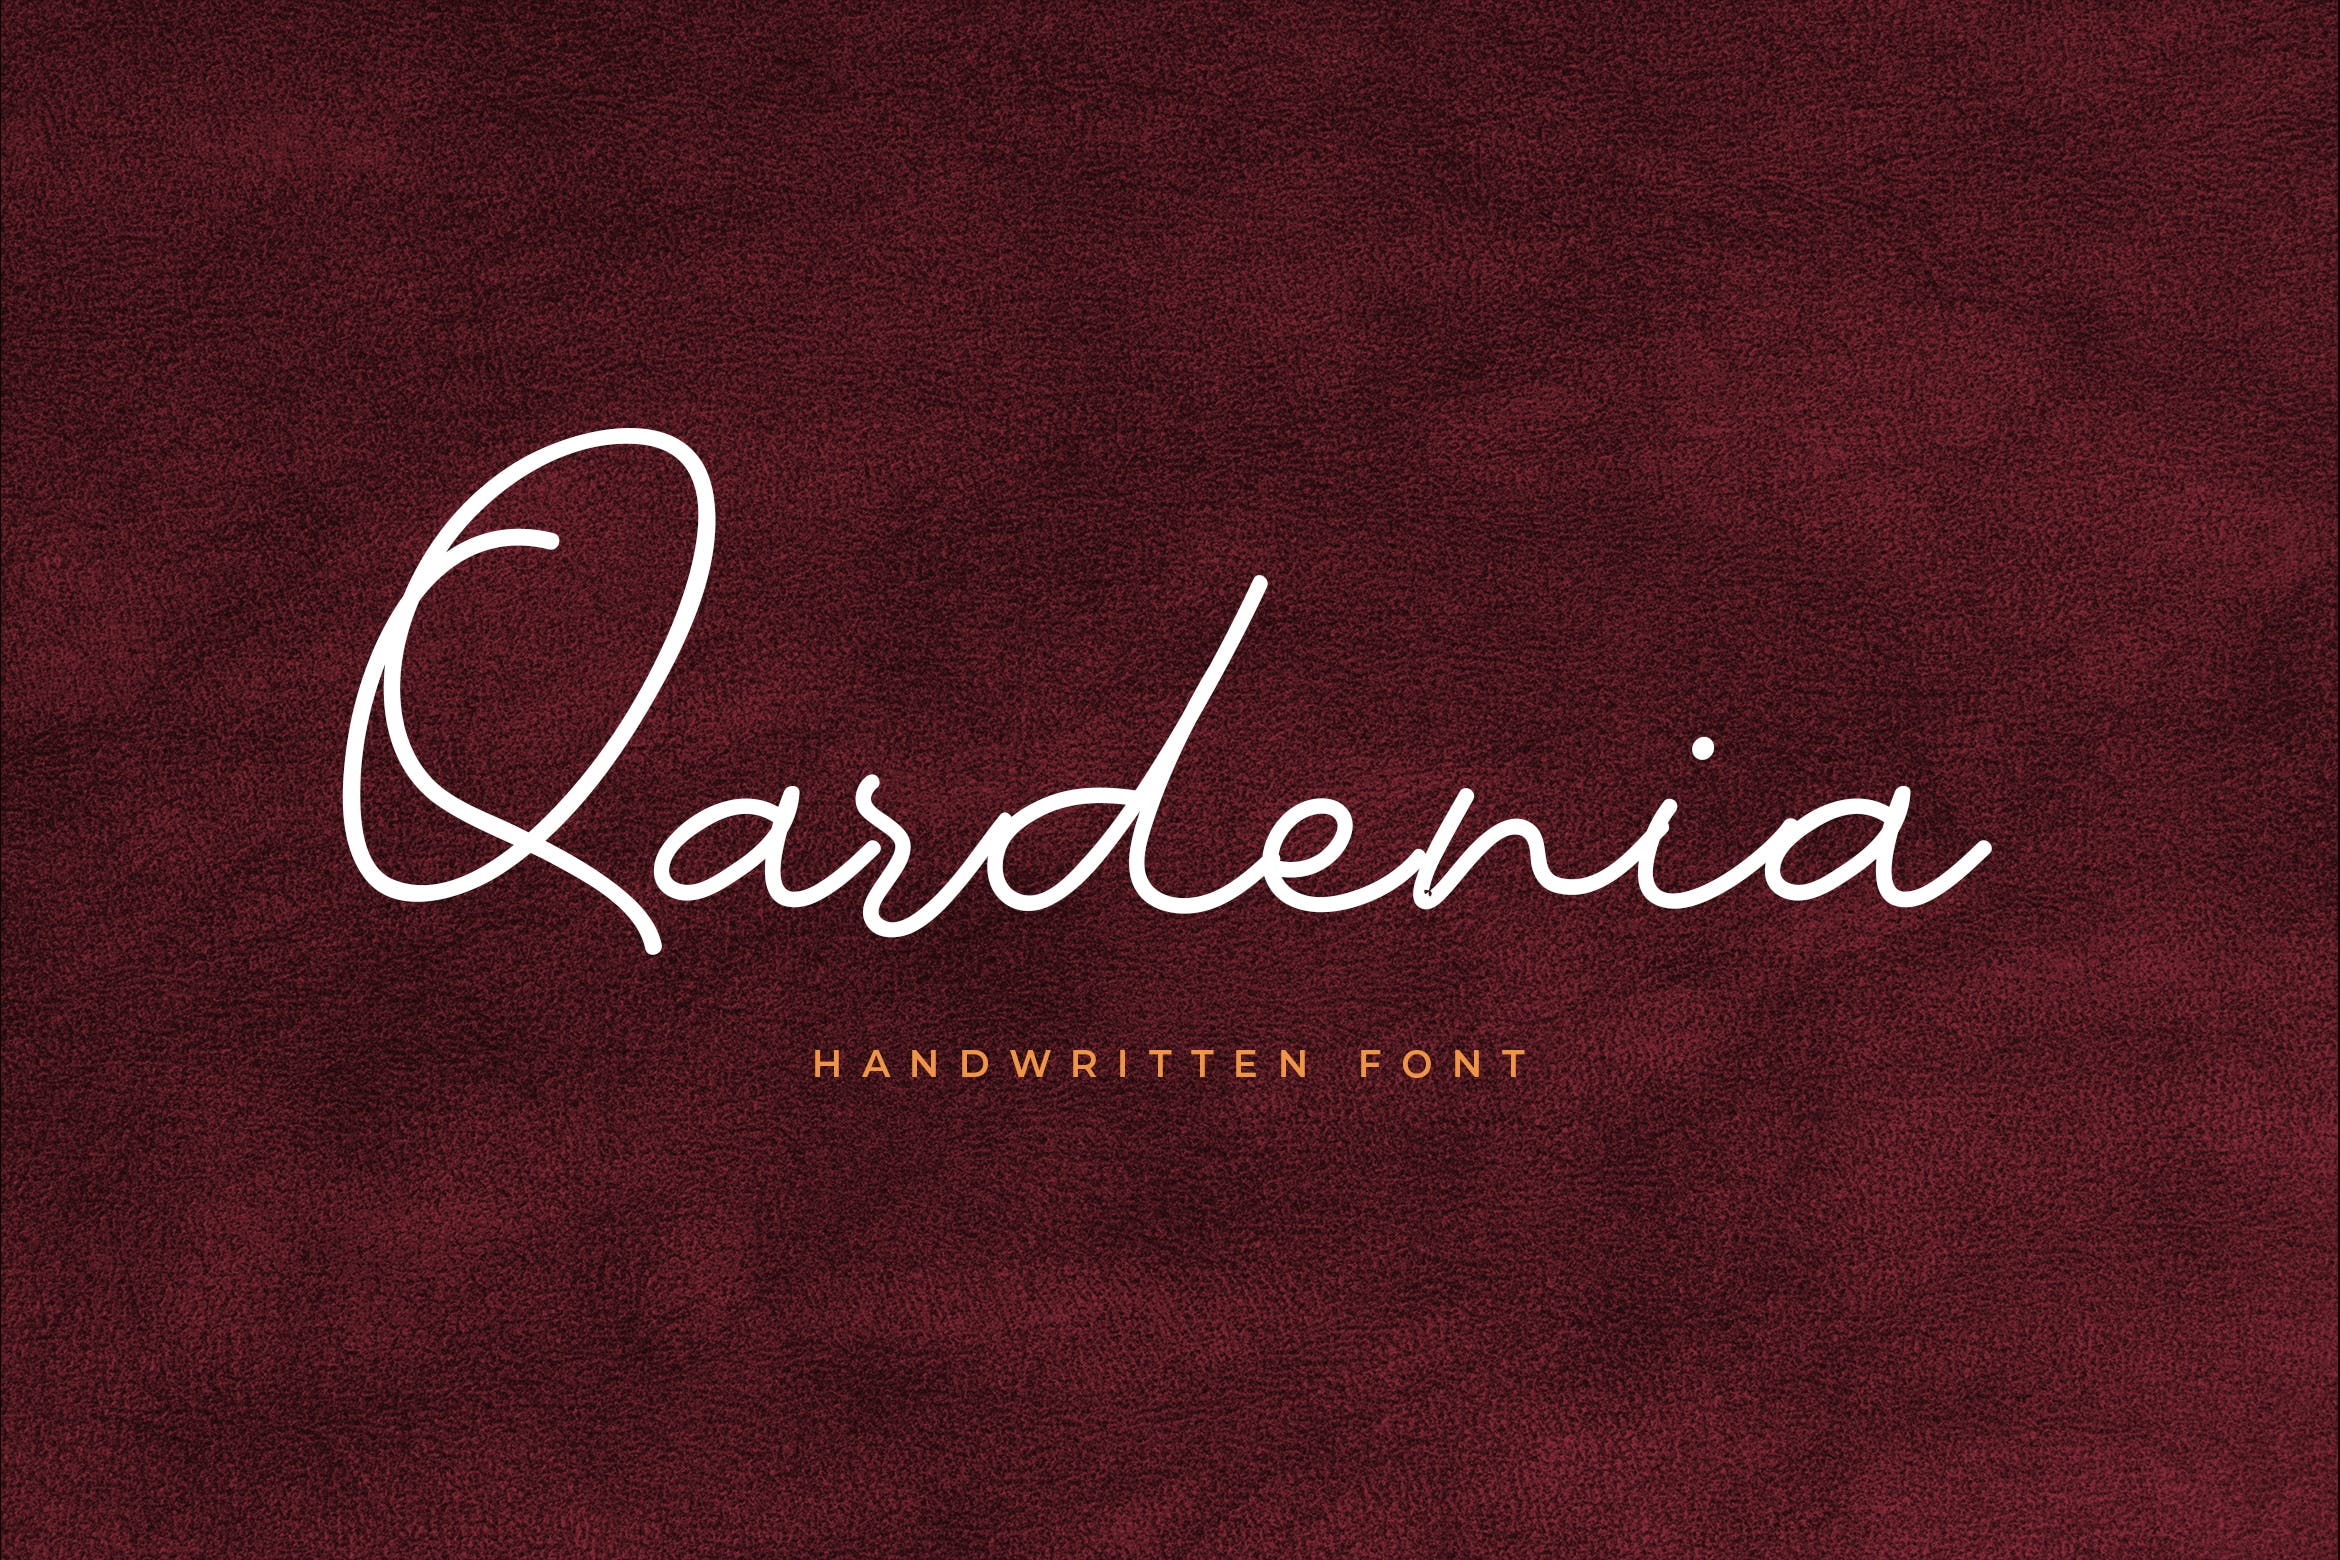 时尚签名风格英文手写字体 Qardenia Signature Font 设计素材 第1张